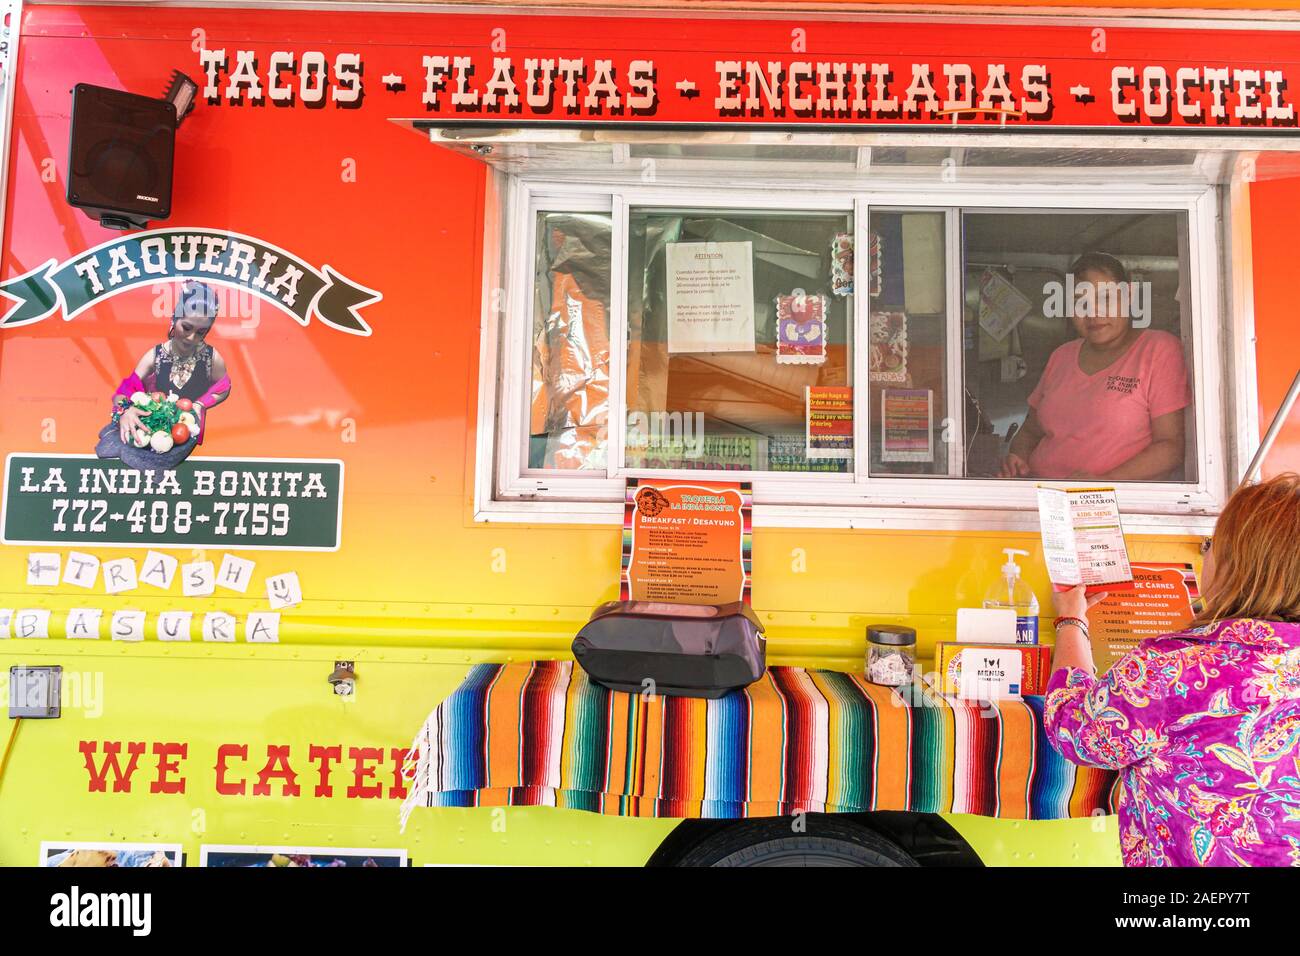 Indiantown Florida,camion di cibo,piccola impresa,cibo messicano,tacos,flautas,enchiladas,taqueria,venditore finestra,ispanica,donna,ordinazione,FL191110039 Foto Stock